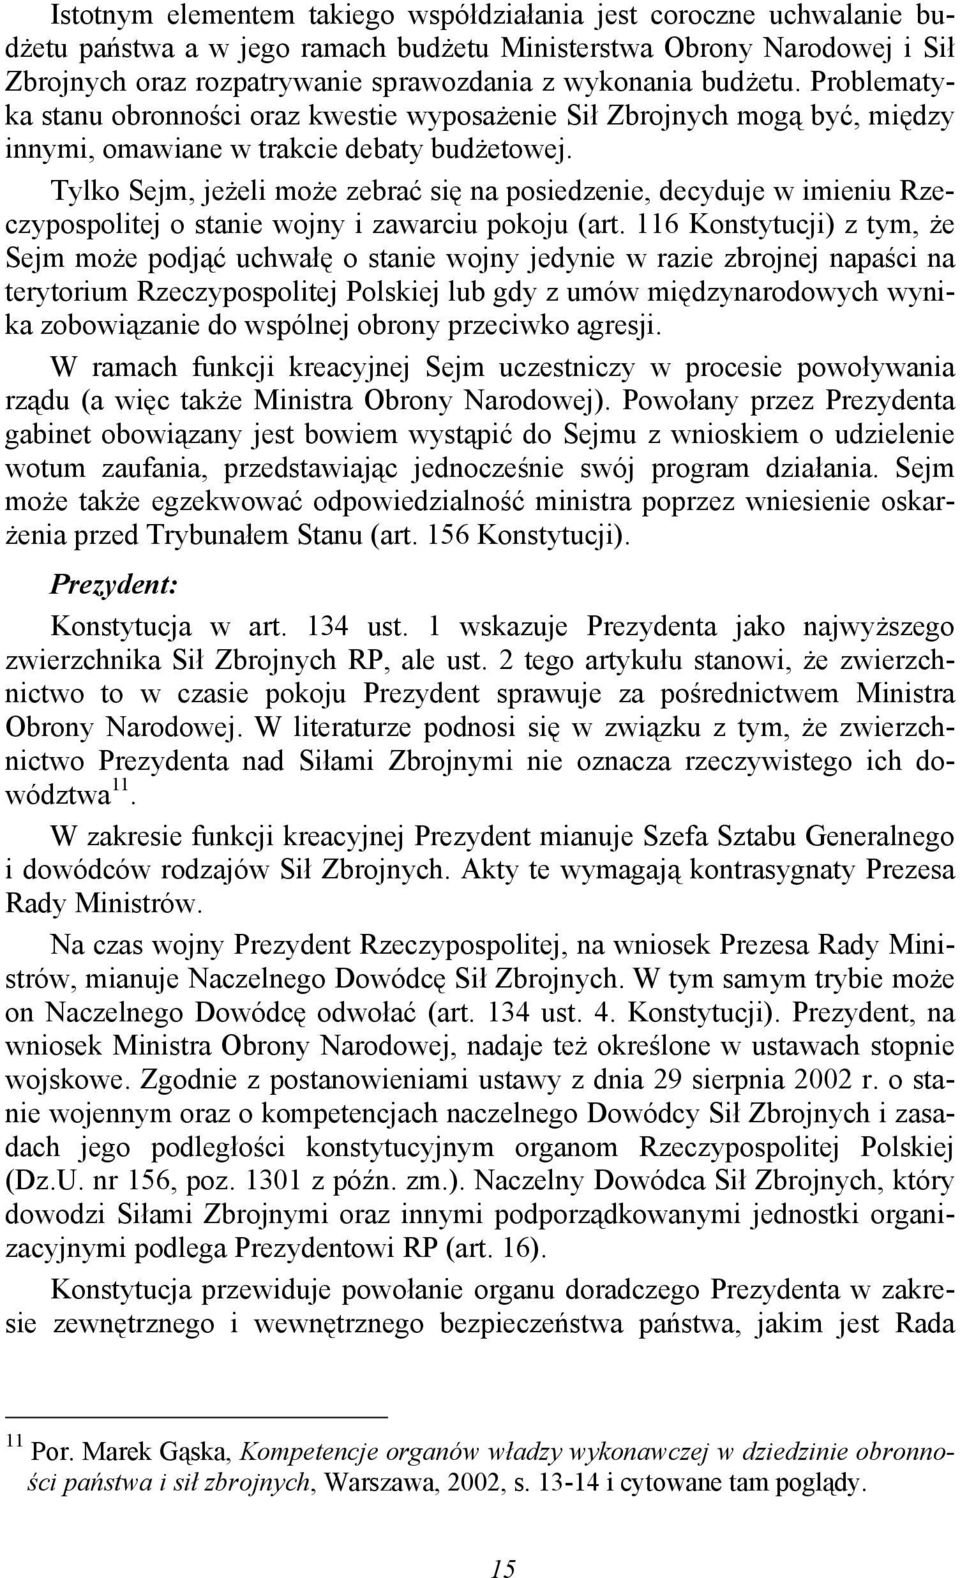 Tylko Sejm, jeżeli może zebrać się na posiedzenie, decyduje w imieniu Rzeczypospolitej o stanie wojny i zawarciu pokoju (art.